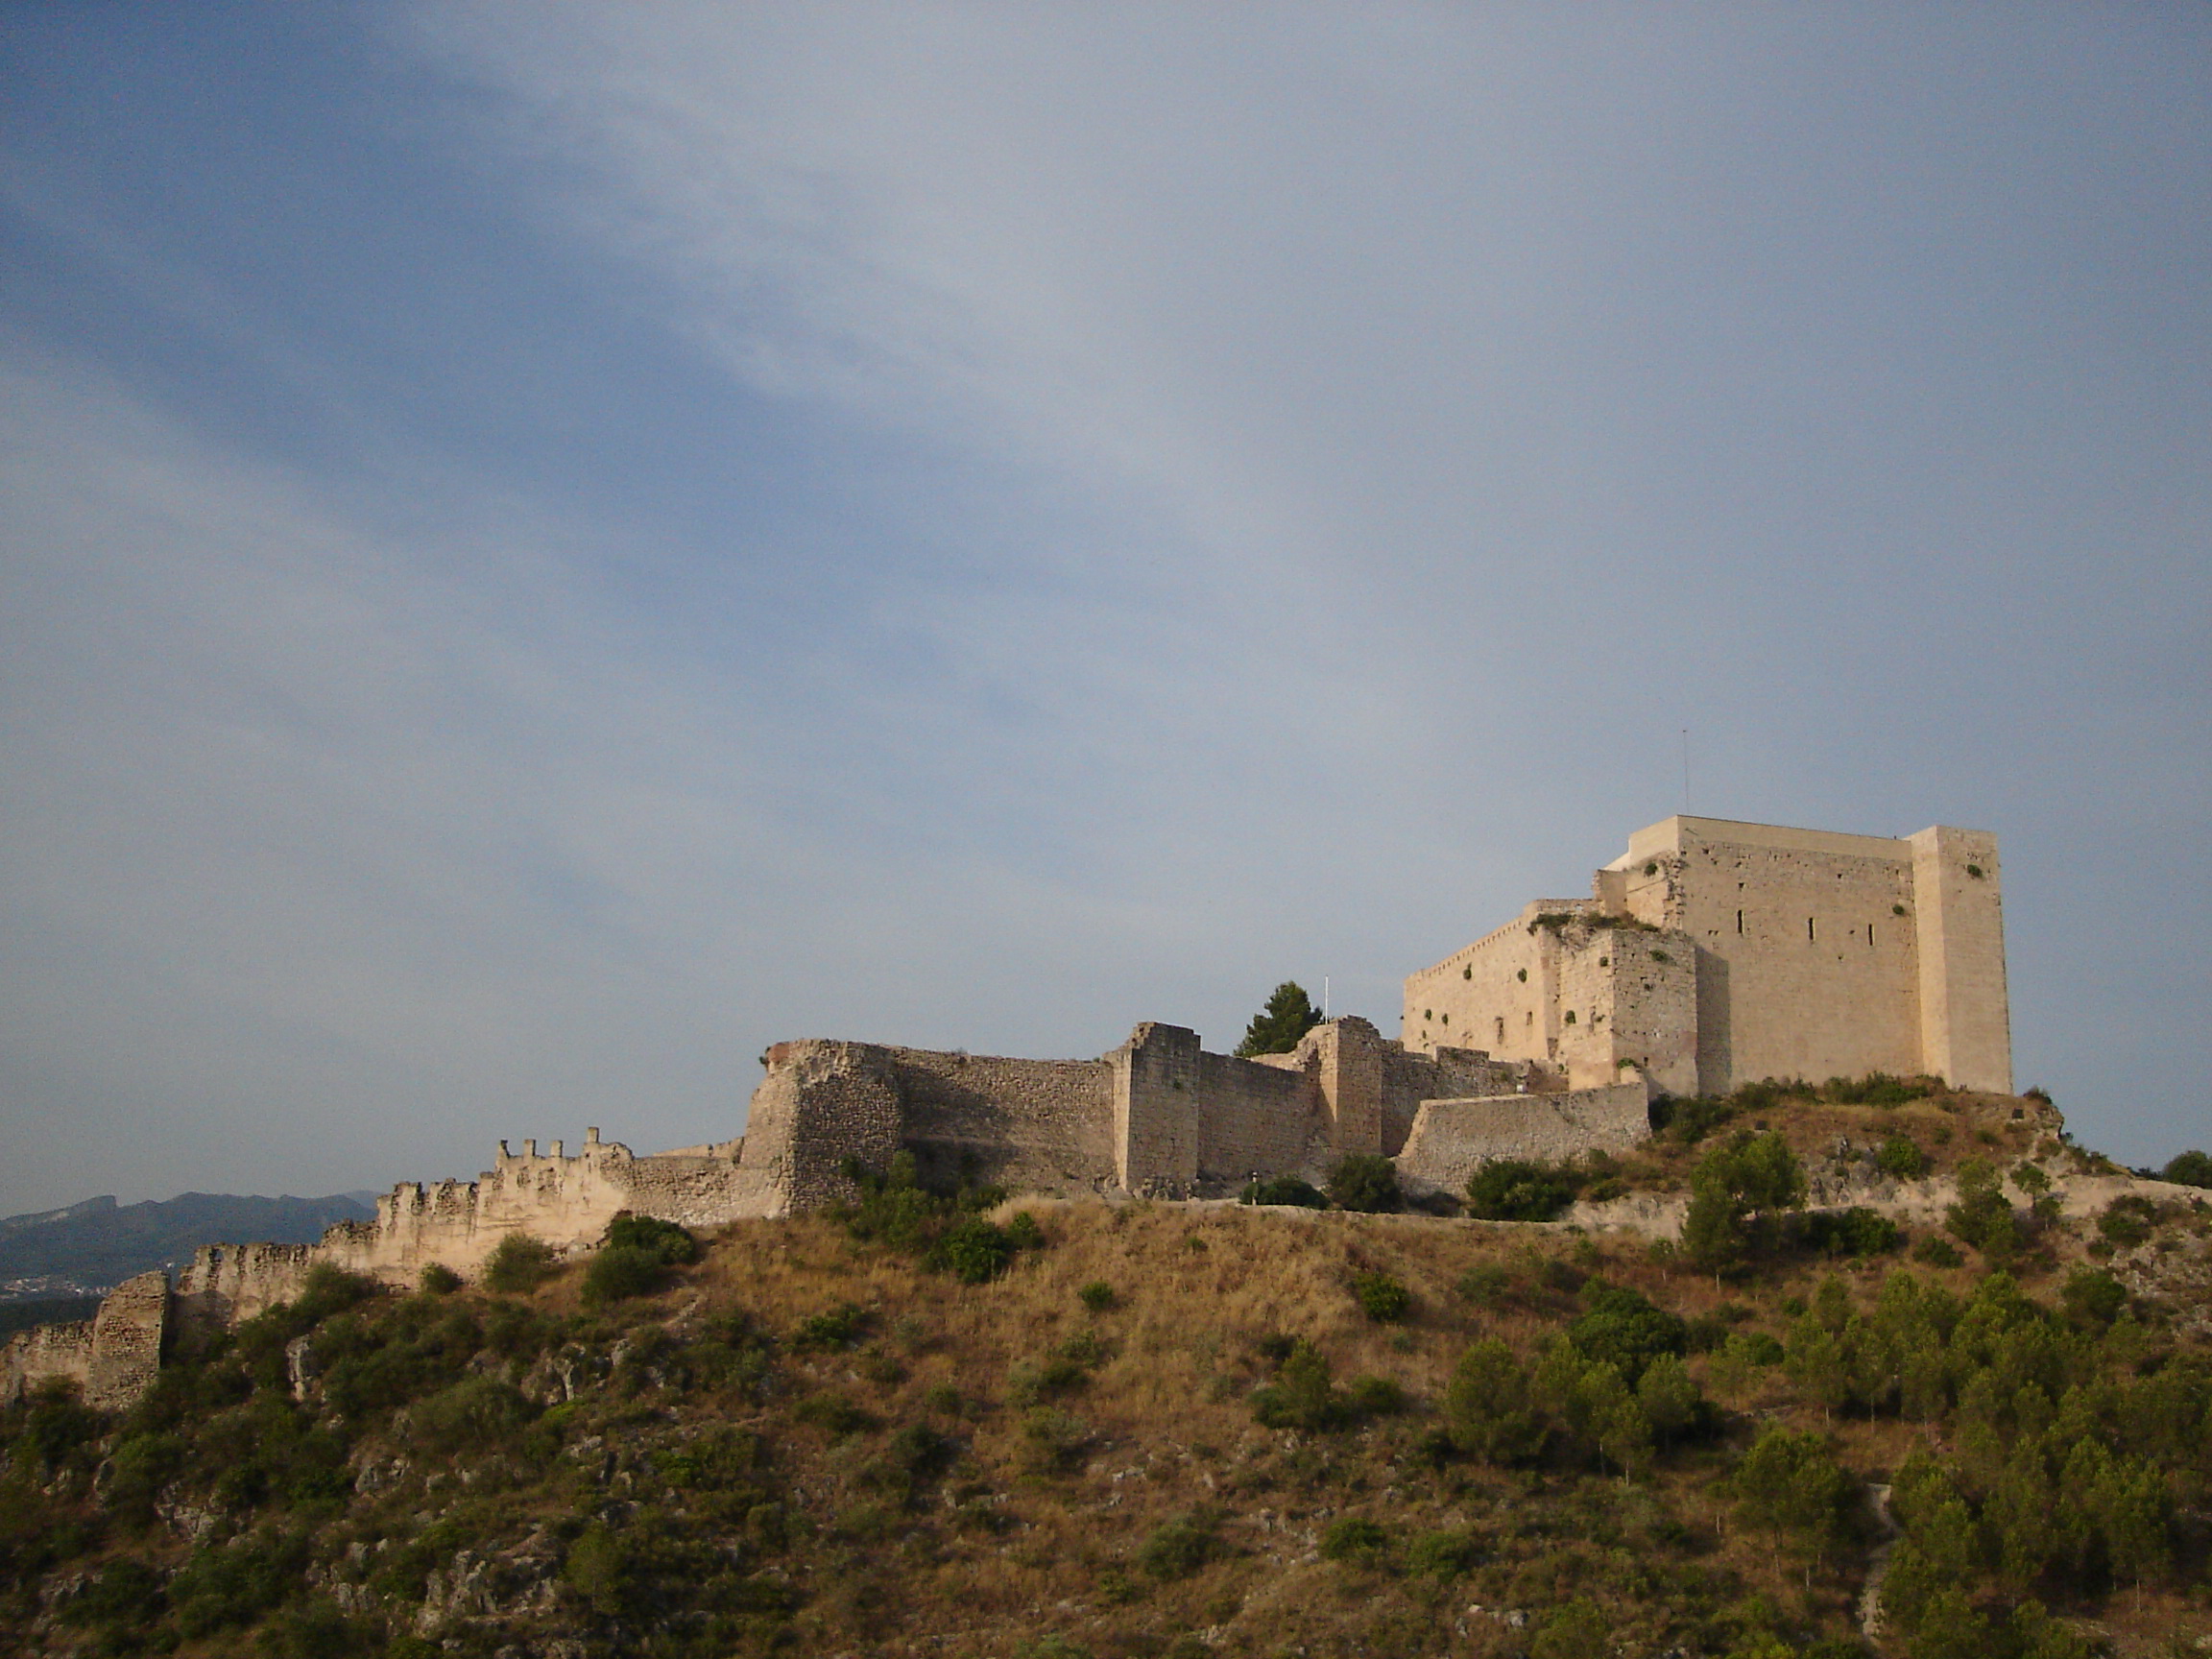 Oferta de treball per al Castell de Miravet